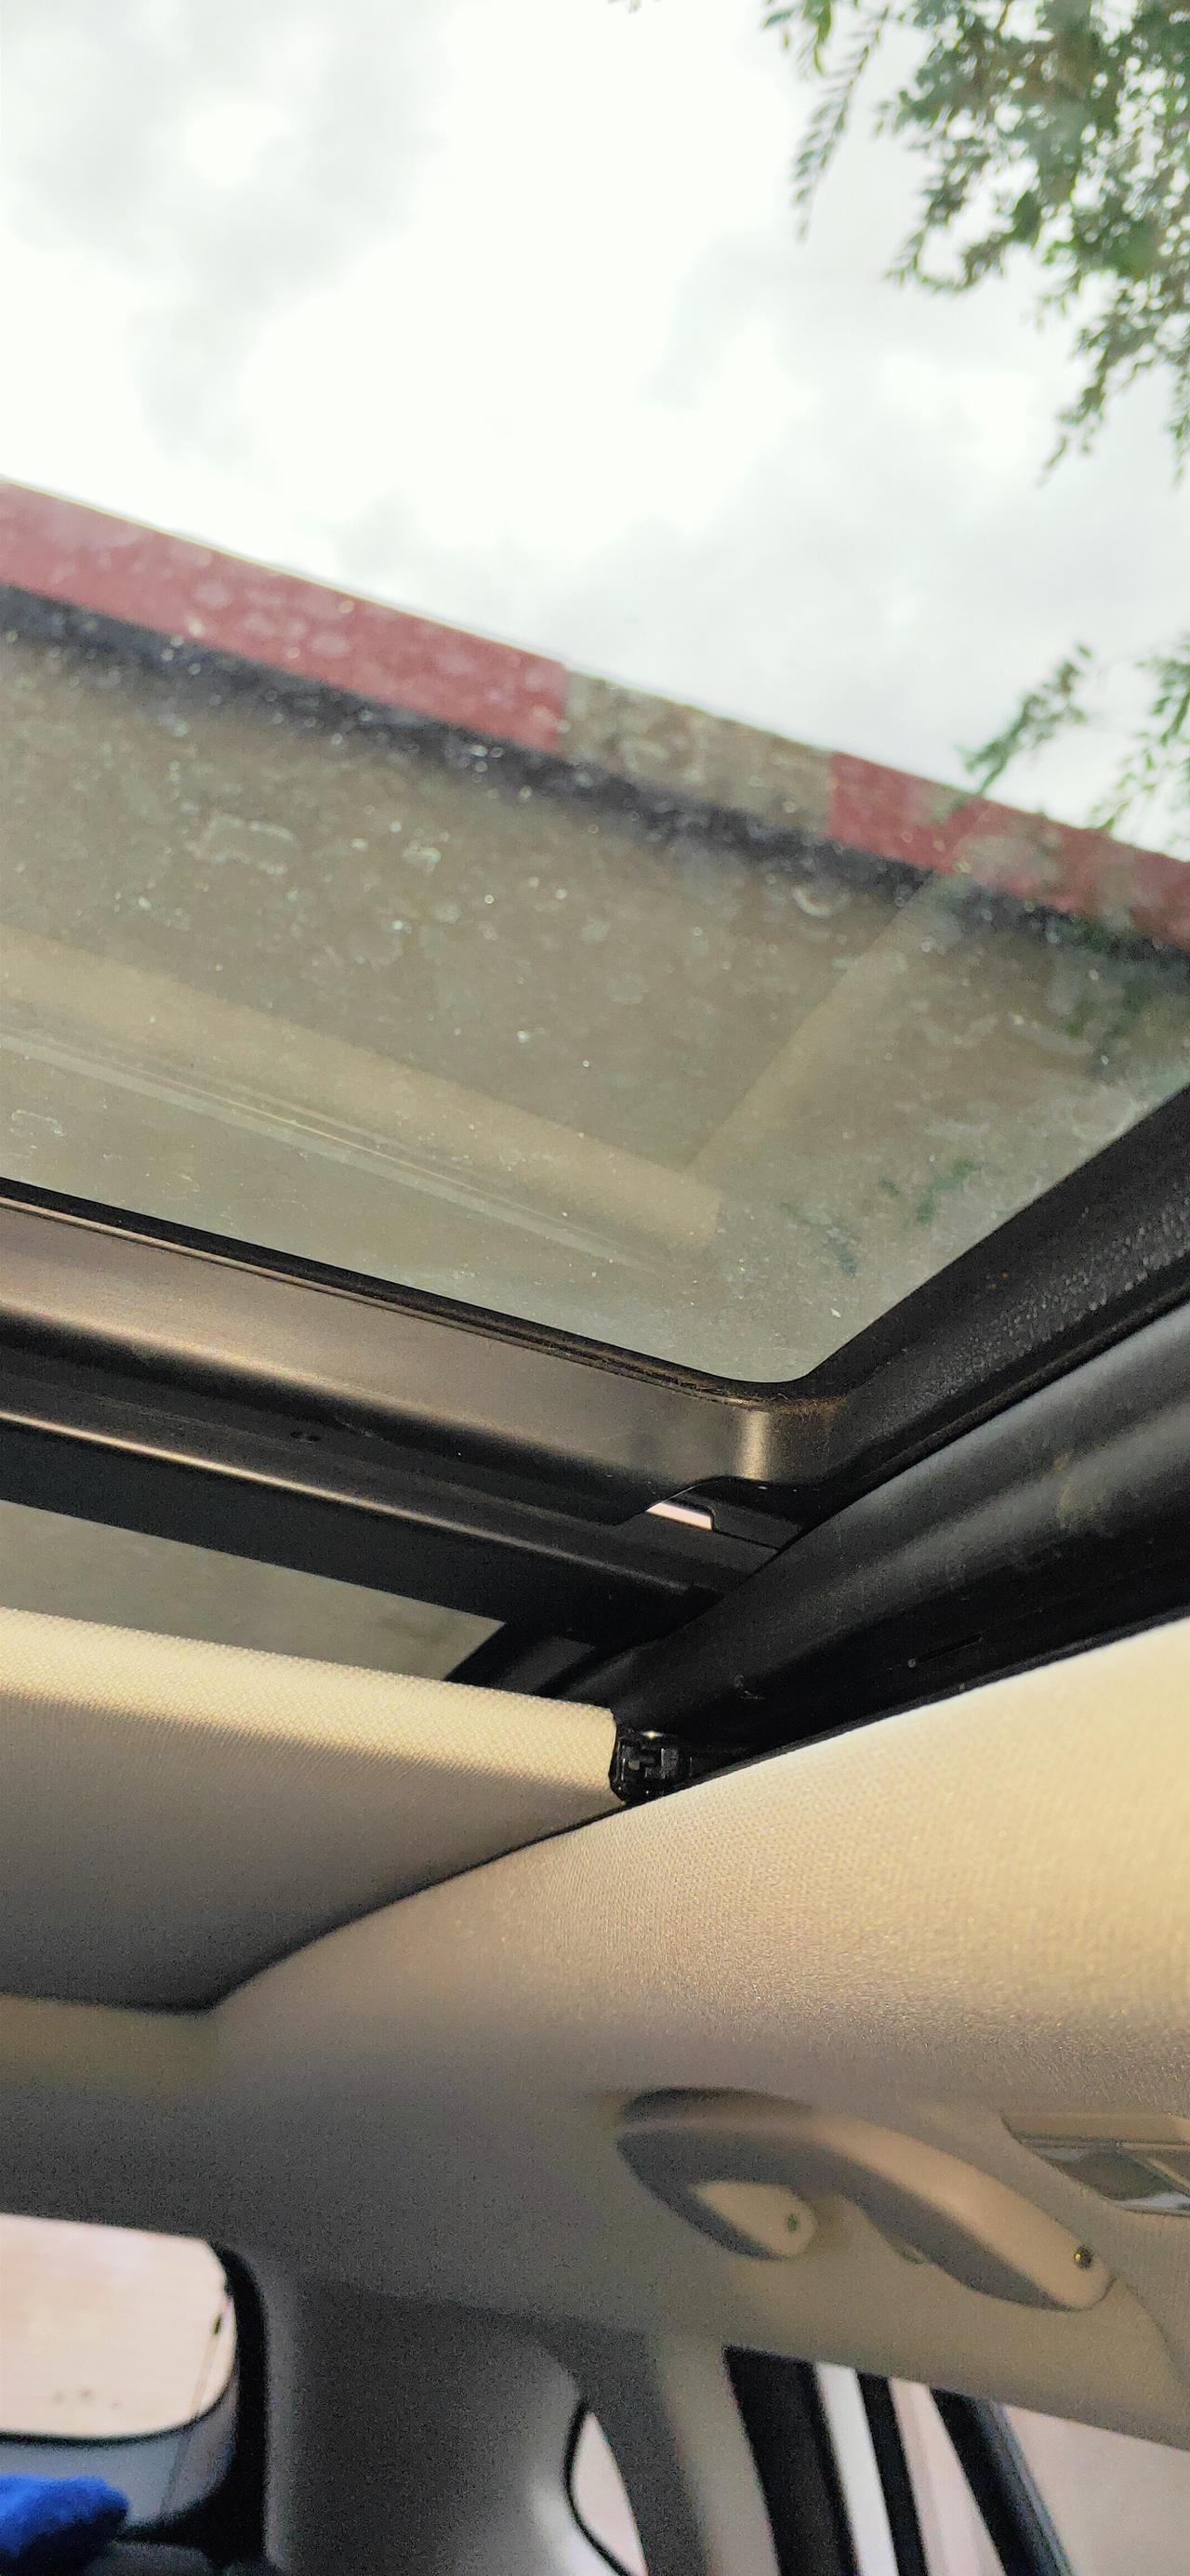 东风风神奕炫GS 天窗关不严，洗车时还会滴水滴各位有啥好的妙招吗，